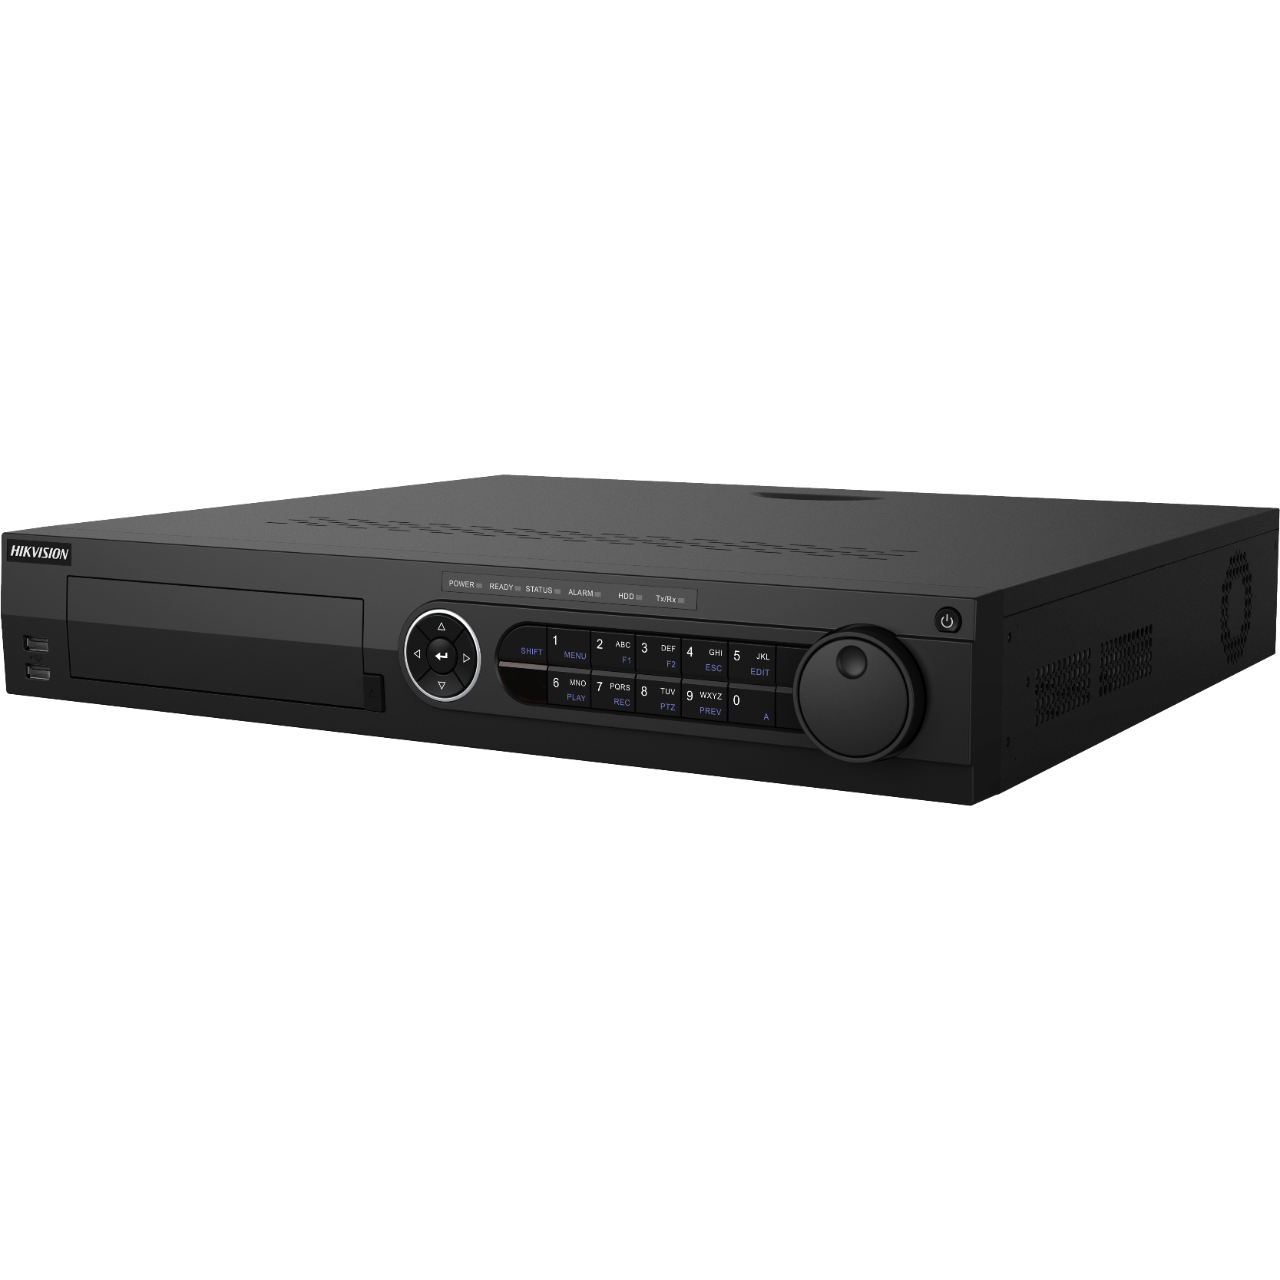 Hikvision  DVR 32 Canales TurboHD + 32 Canales IP / 8 Megapixel (4K) / 4 Bahías de Disco Duro / RAID 0,1,5,6,10 / POS / Videoanalisis / 16 Entradas de Alarma / 2 Salidas HDMI